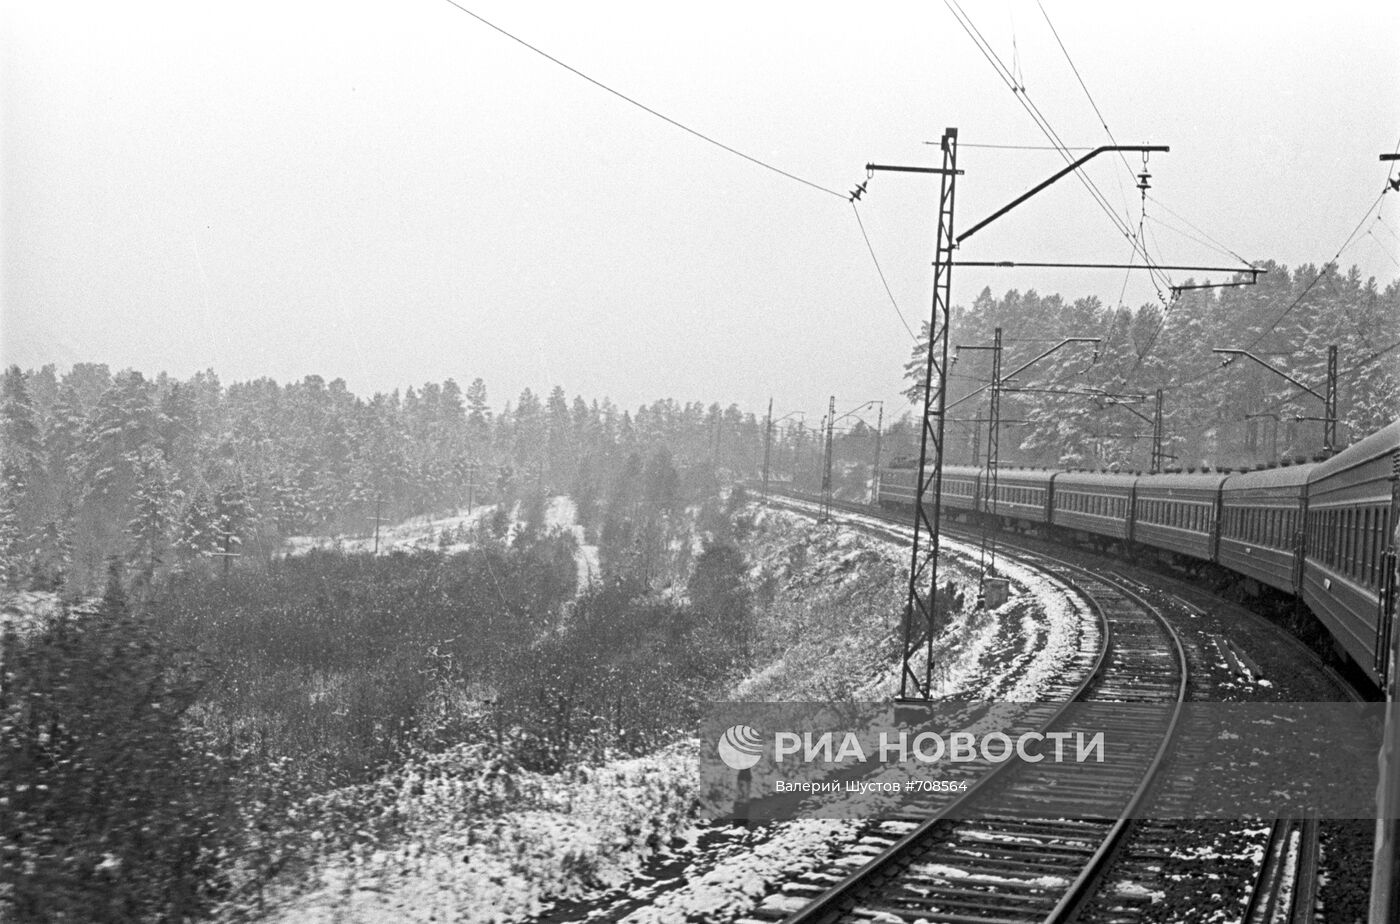 Участок железной дороги Челябинск-Златоуст